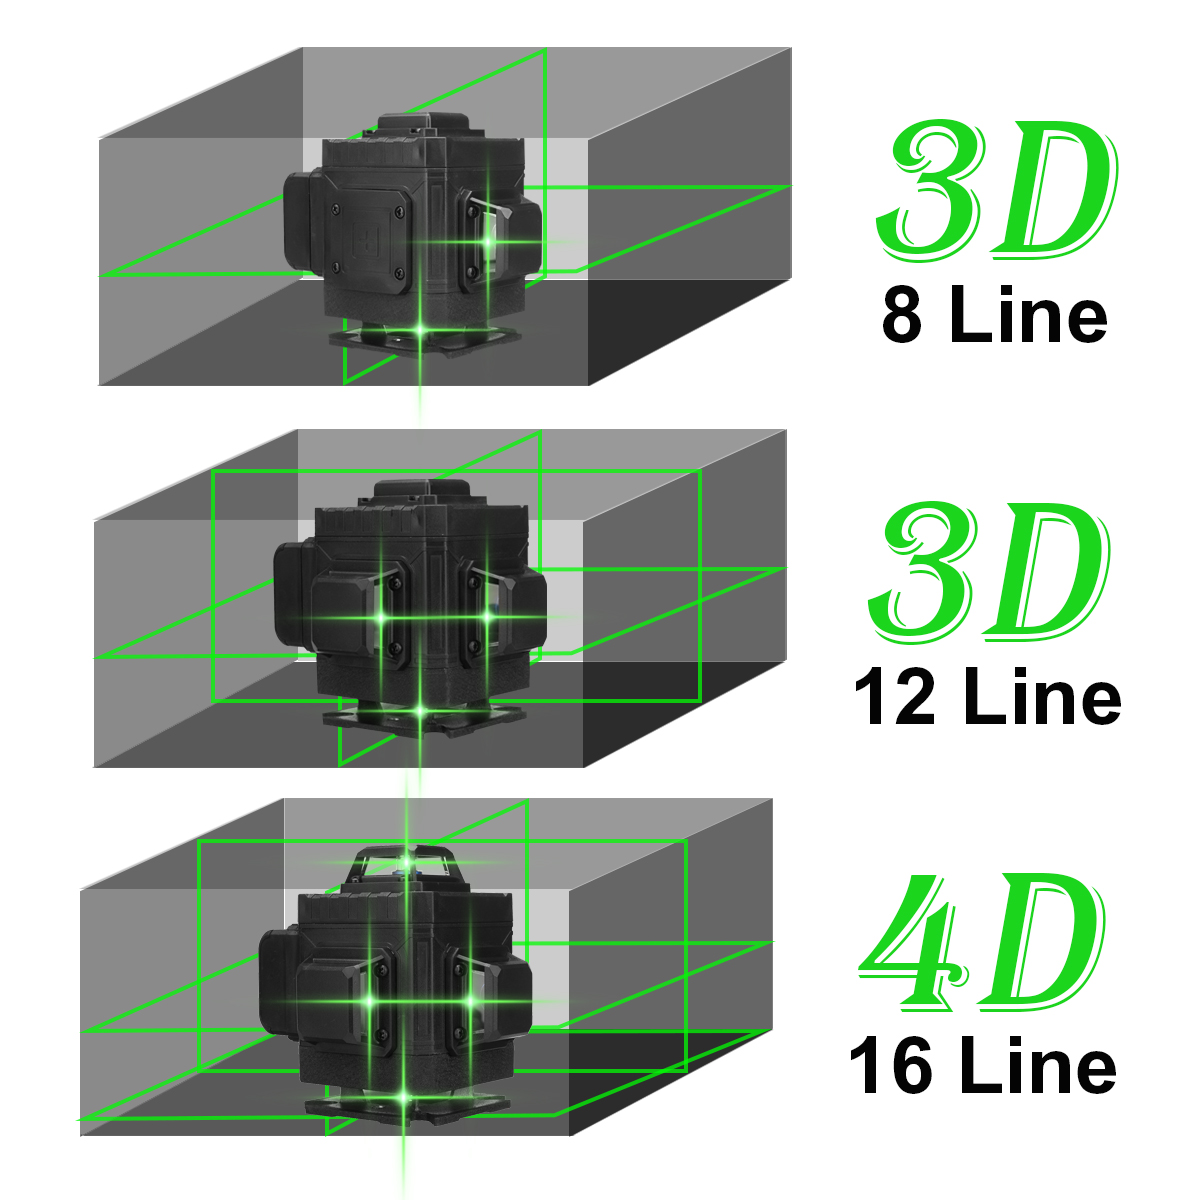 16128-Line-360deg-4D-Horizontal-Vertical-Cross-Green-Light-Laser-Level-Self-Leveling-Measure-Super-P-1864005-2